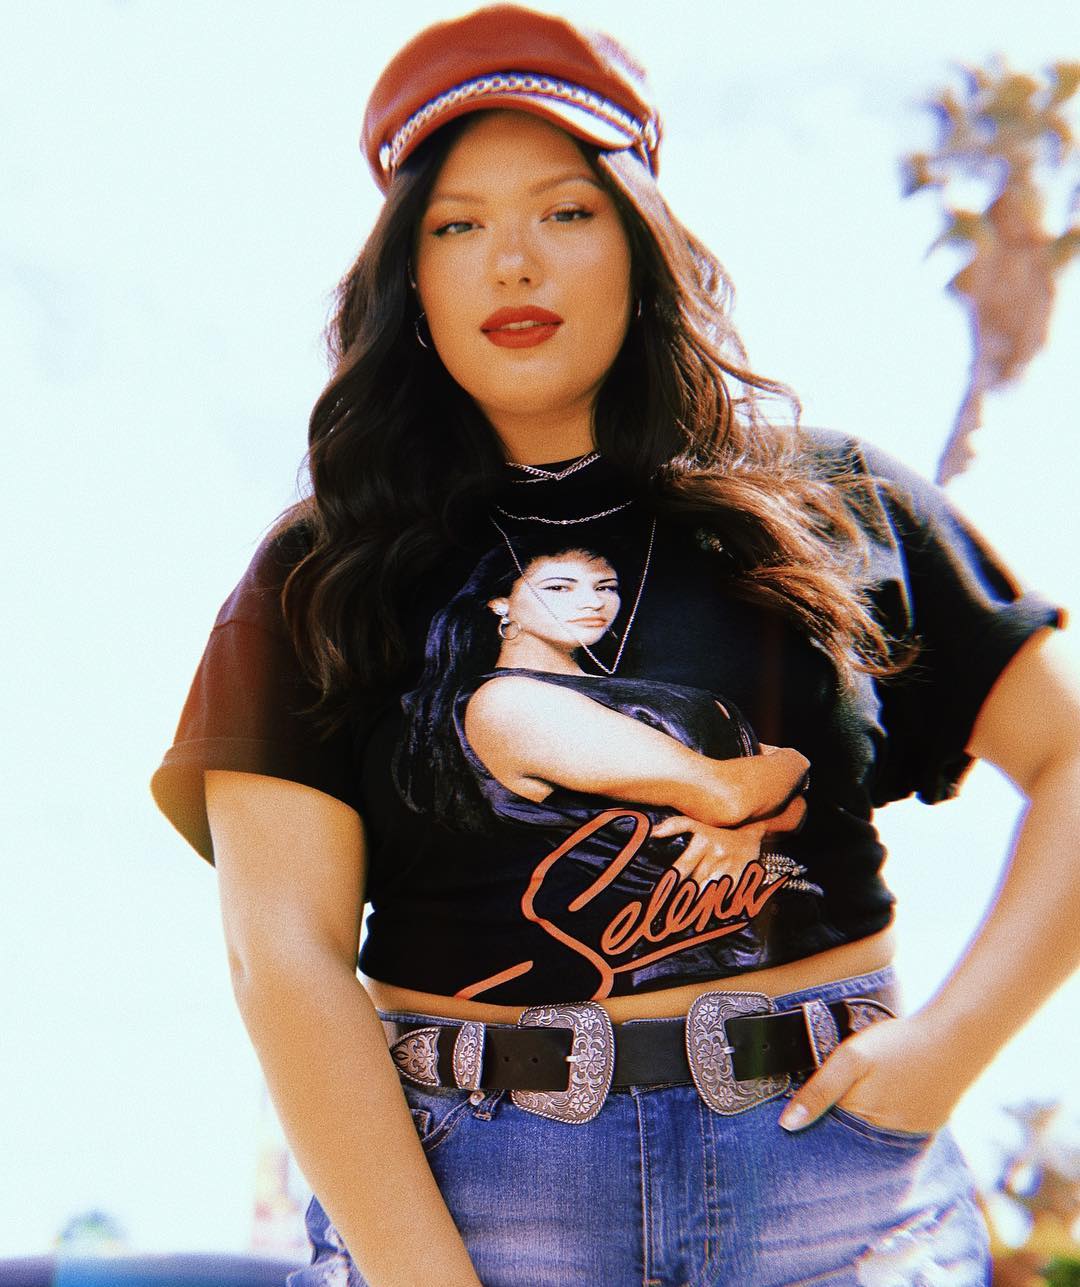 Forever 21 lanza colección inspirada en Selena Quintanilla